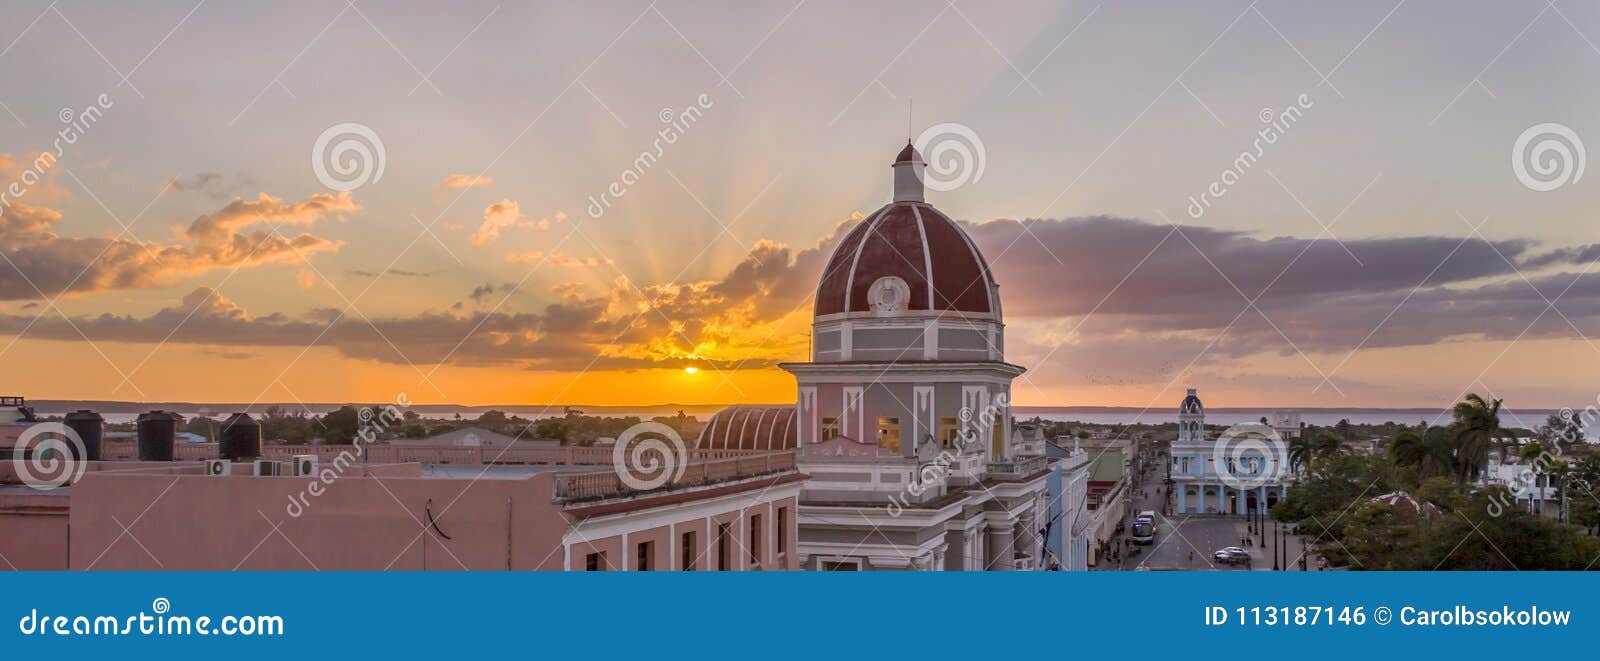 palacio del gobierno, cienfuegos cuba